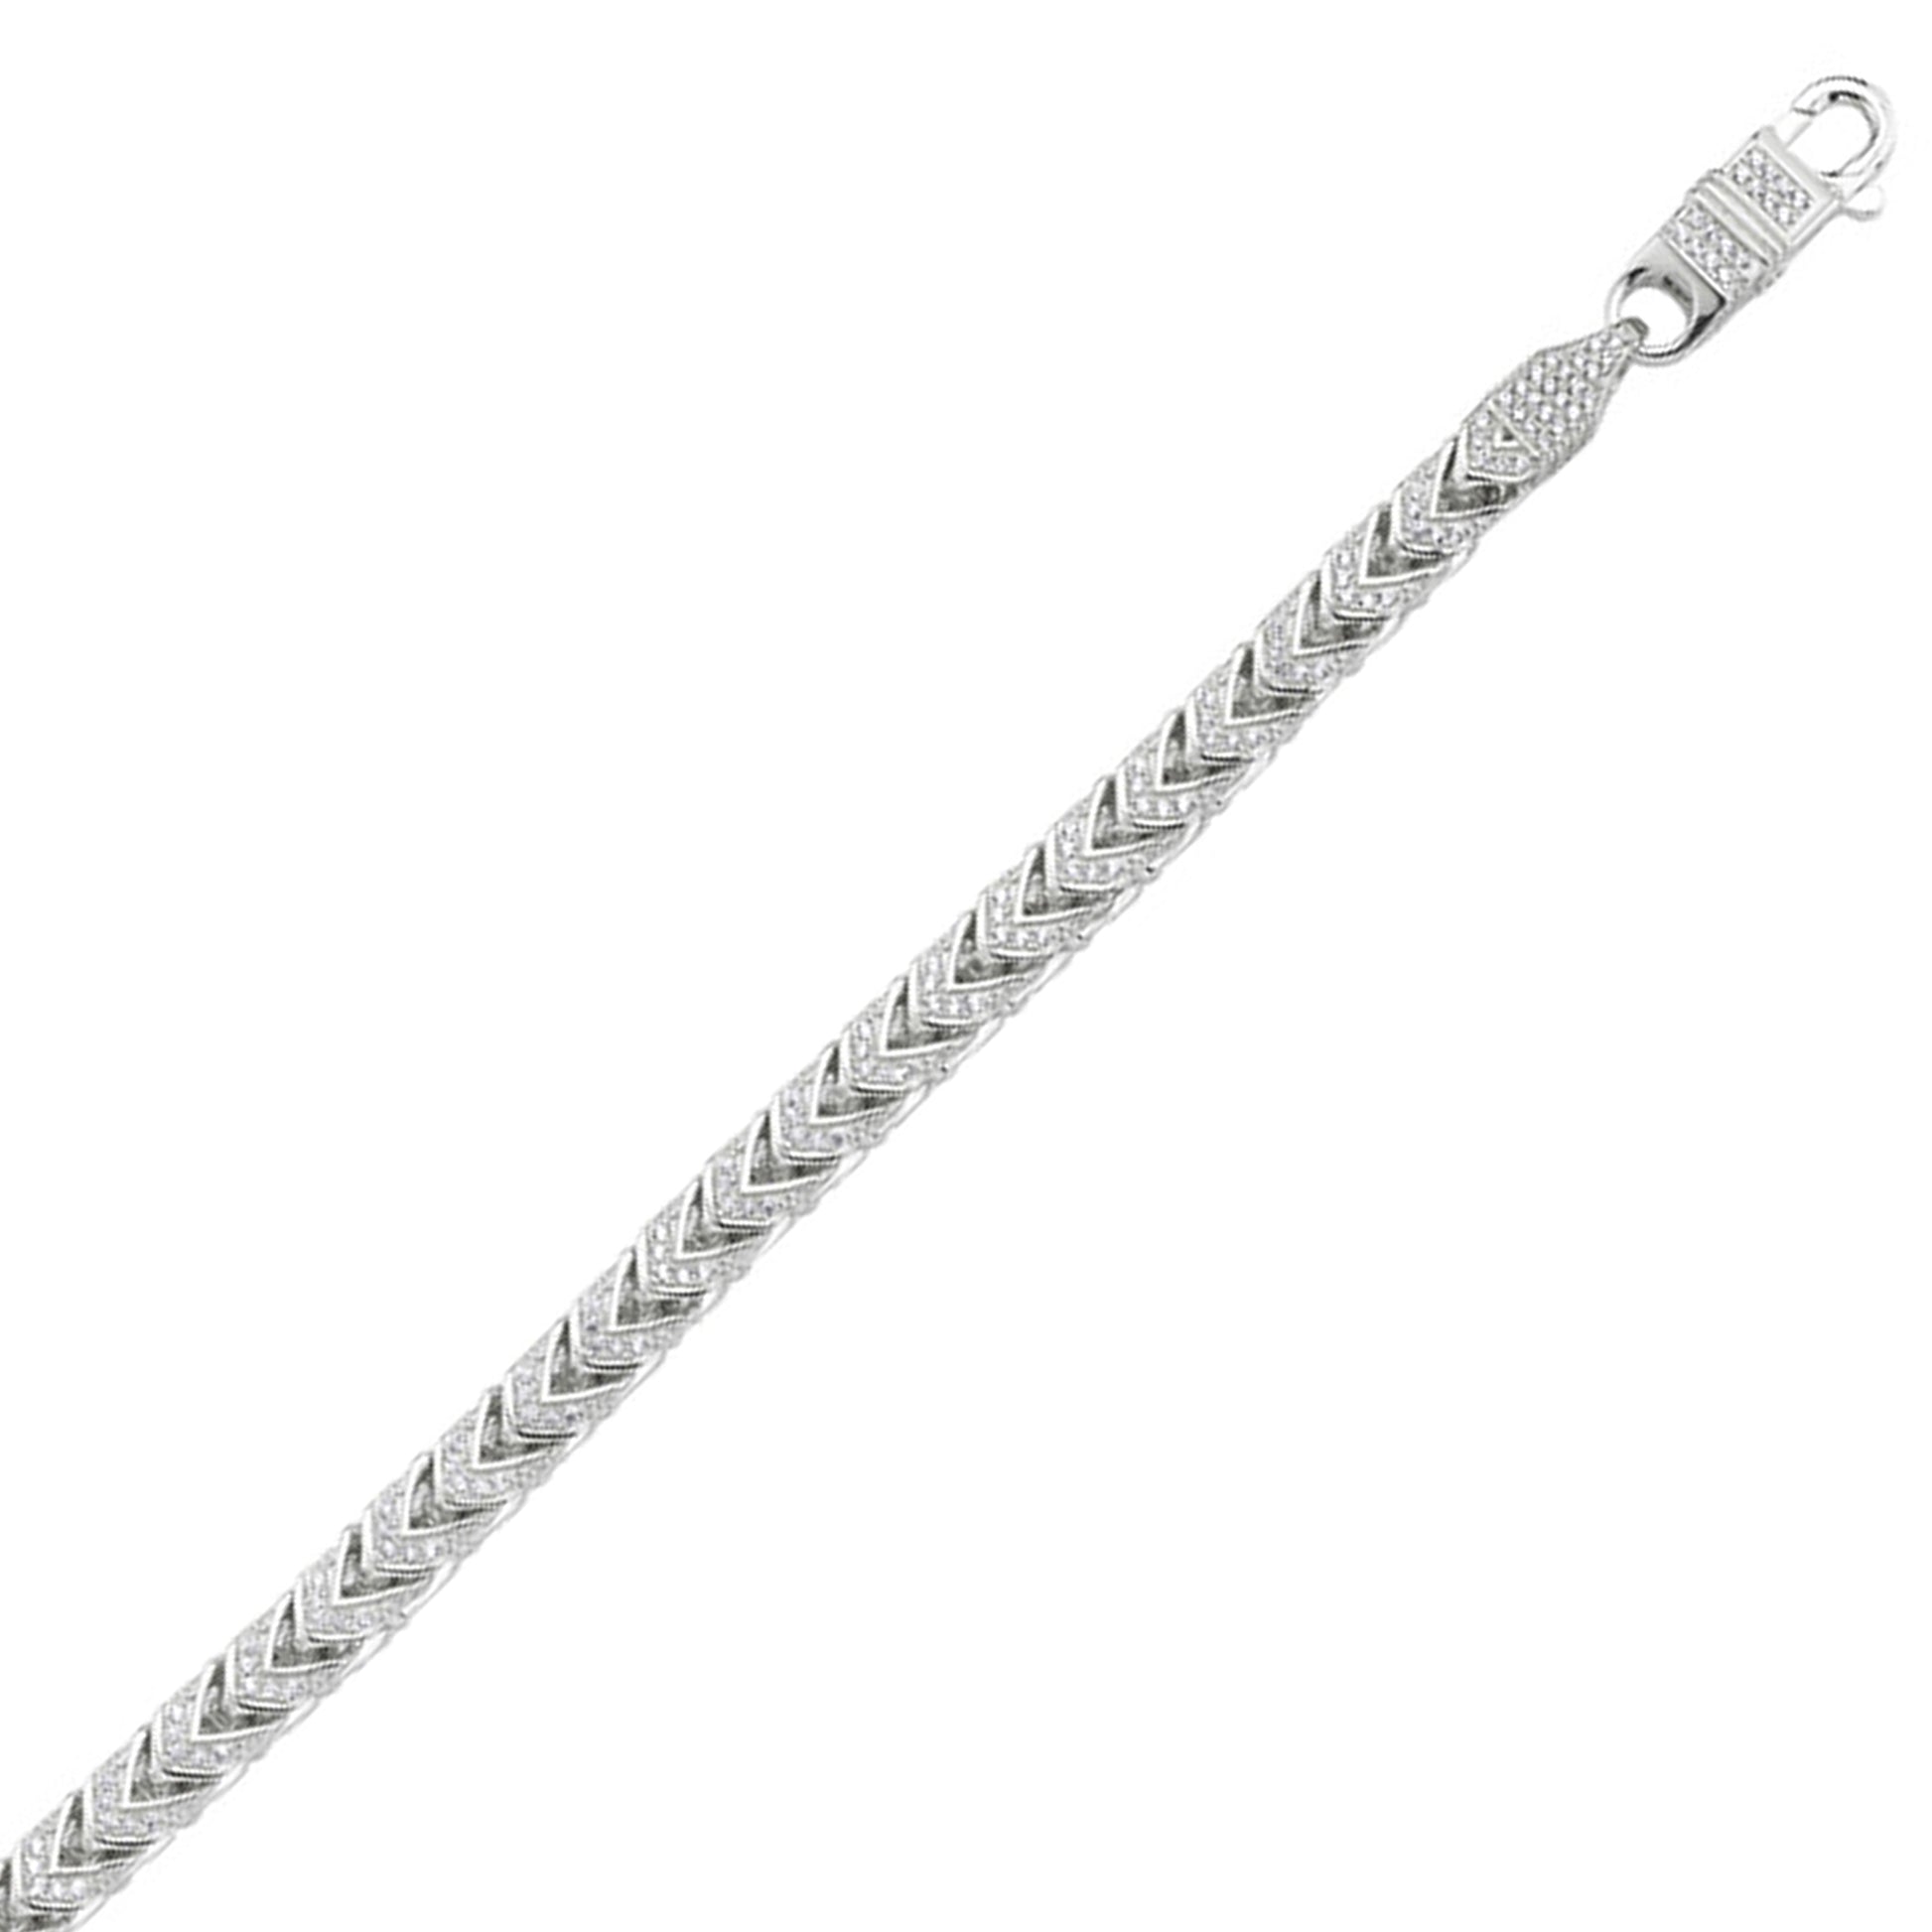 Mens Silver  CZ Foxtail Foxtail Bracelet 8mm 8.5 inch - BLBR11